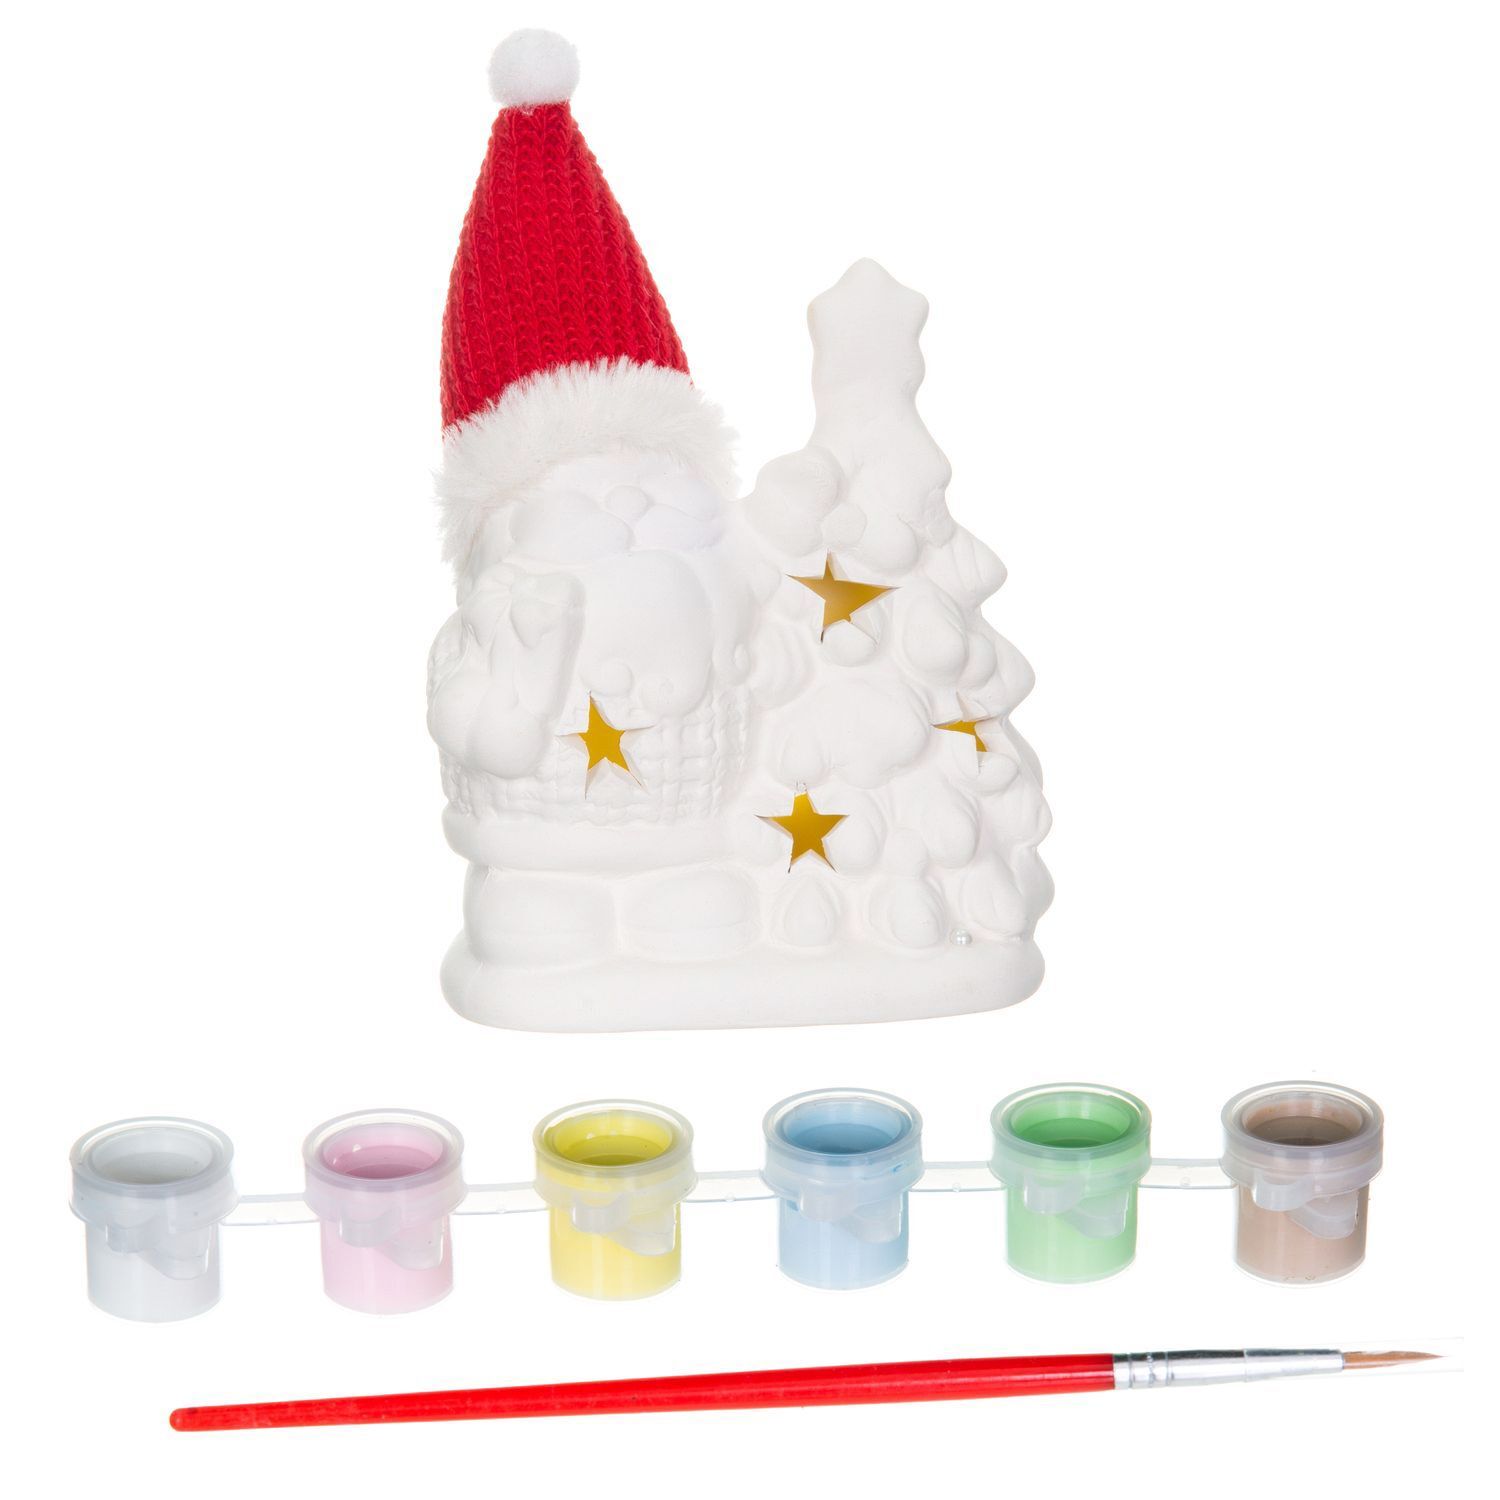 Набор для творчества Bondibon"Новогодние украшения" сувенир Дед Мороз с подсветкой LED, ВВ1597